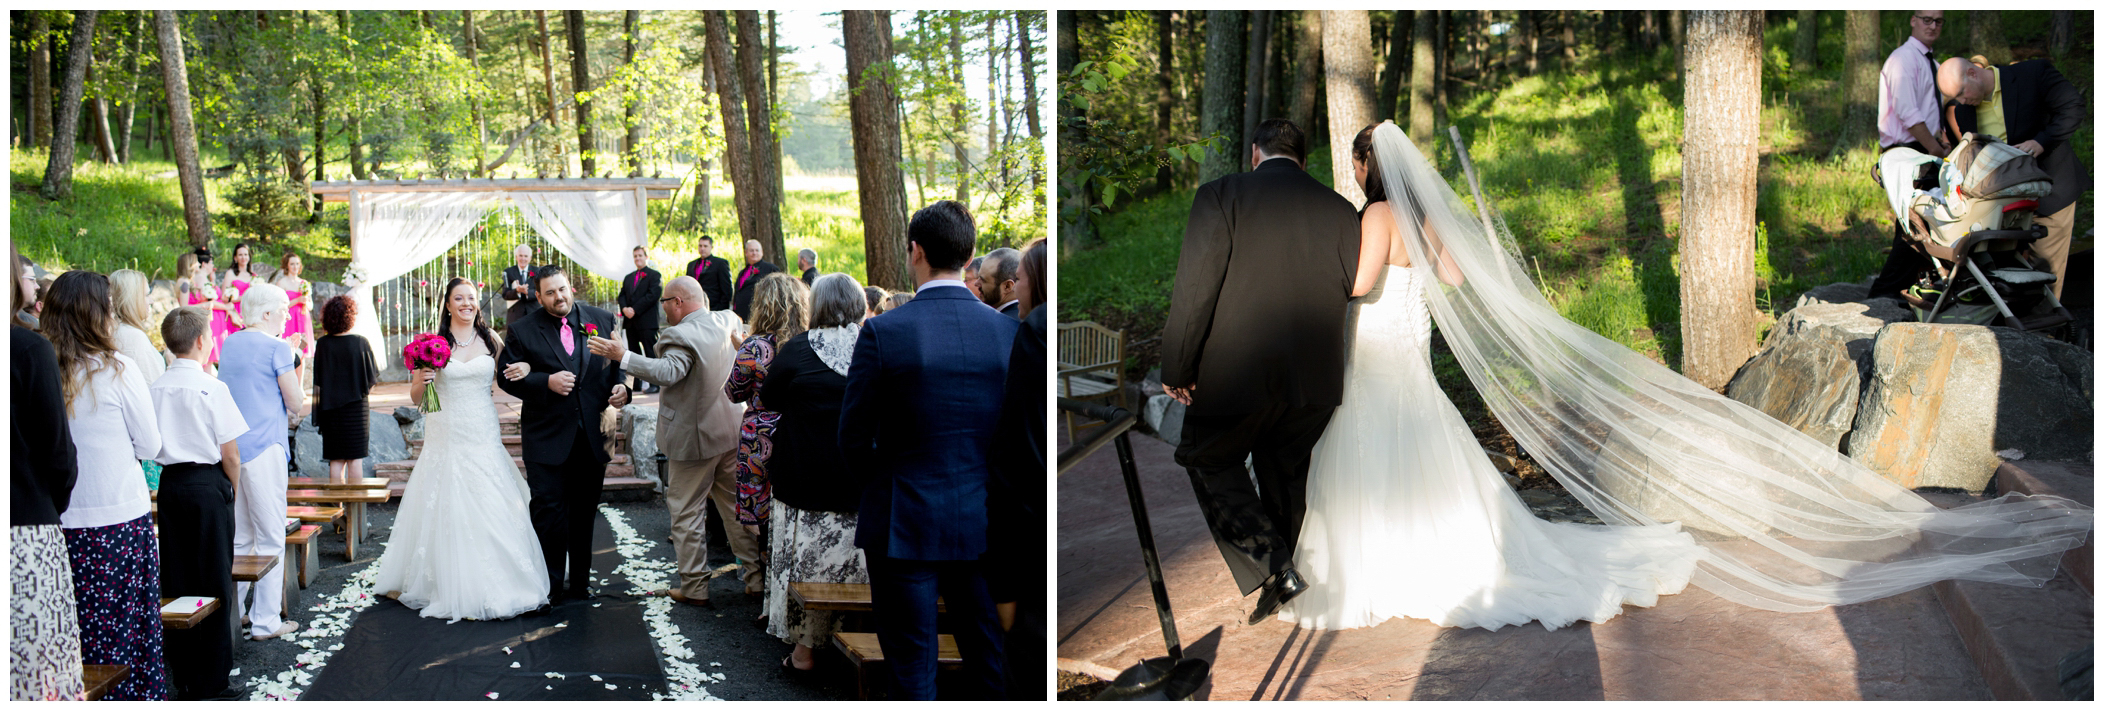 Colorado forest wedding photos 